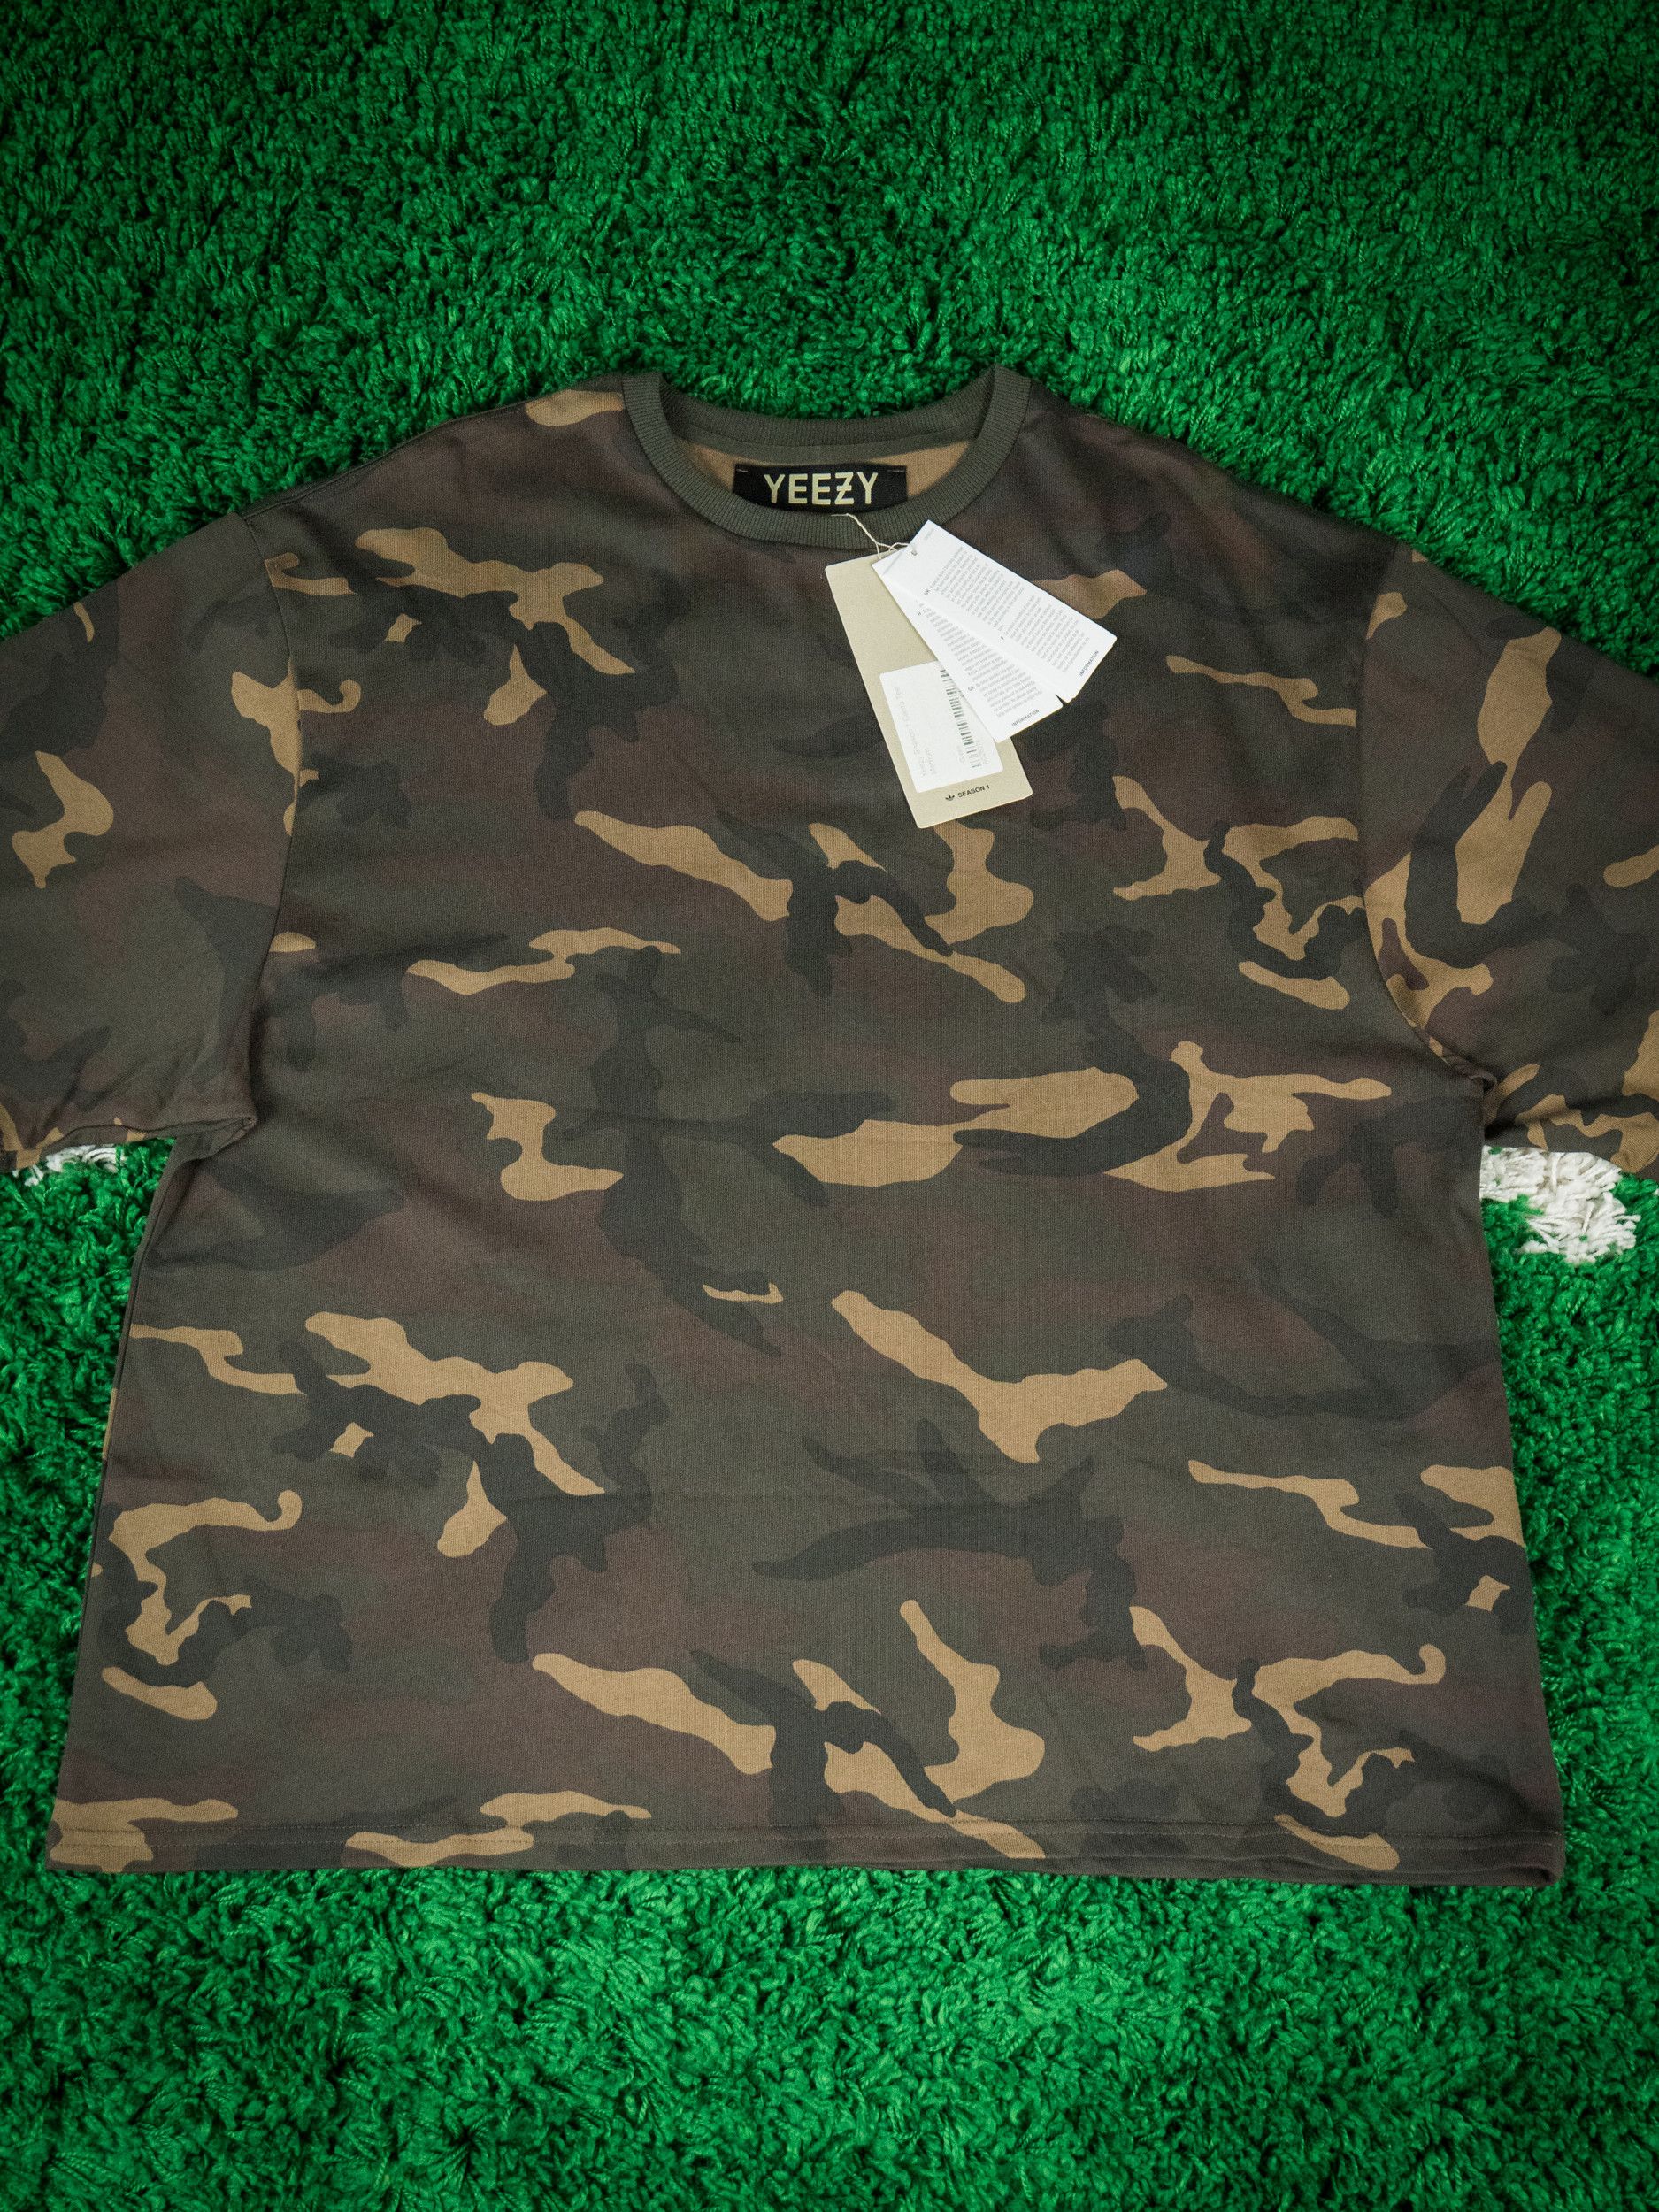 uvidenhed forbi Berettigelse Adidas Yeezy Season 1 Camouflage Tee | Grailed